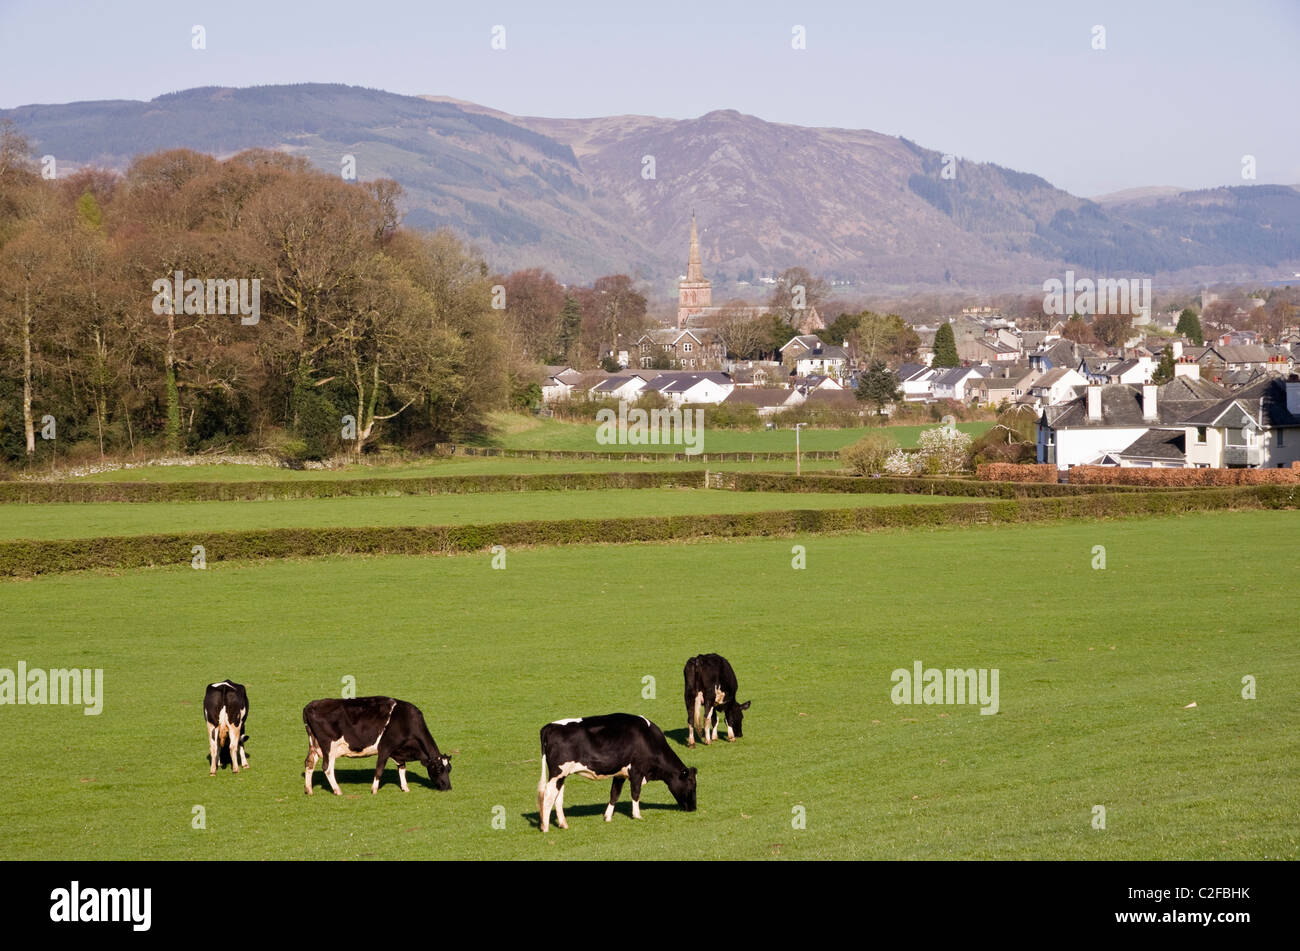 Pays pastoral avec scène Friesian Holstein troupeau de vaches laitières, le pâturage du bétail dans un champ à la périphérie de la ville. Keswick, Cumbria, England, UK. Banque D'Images